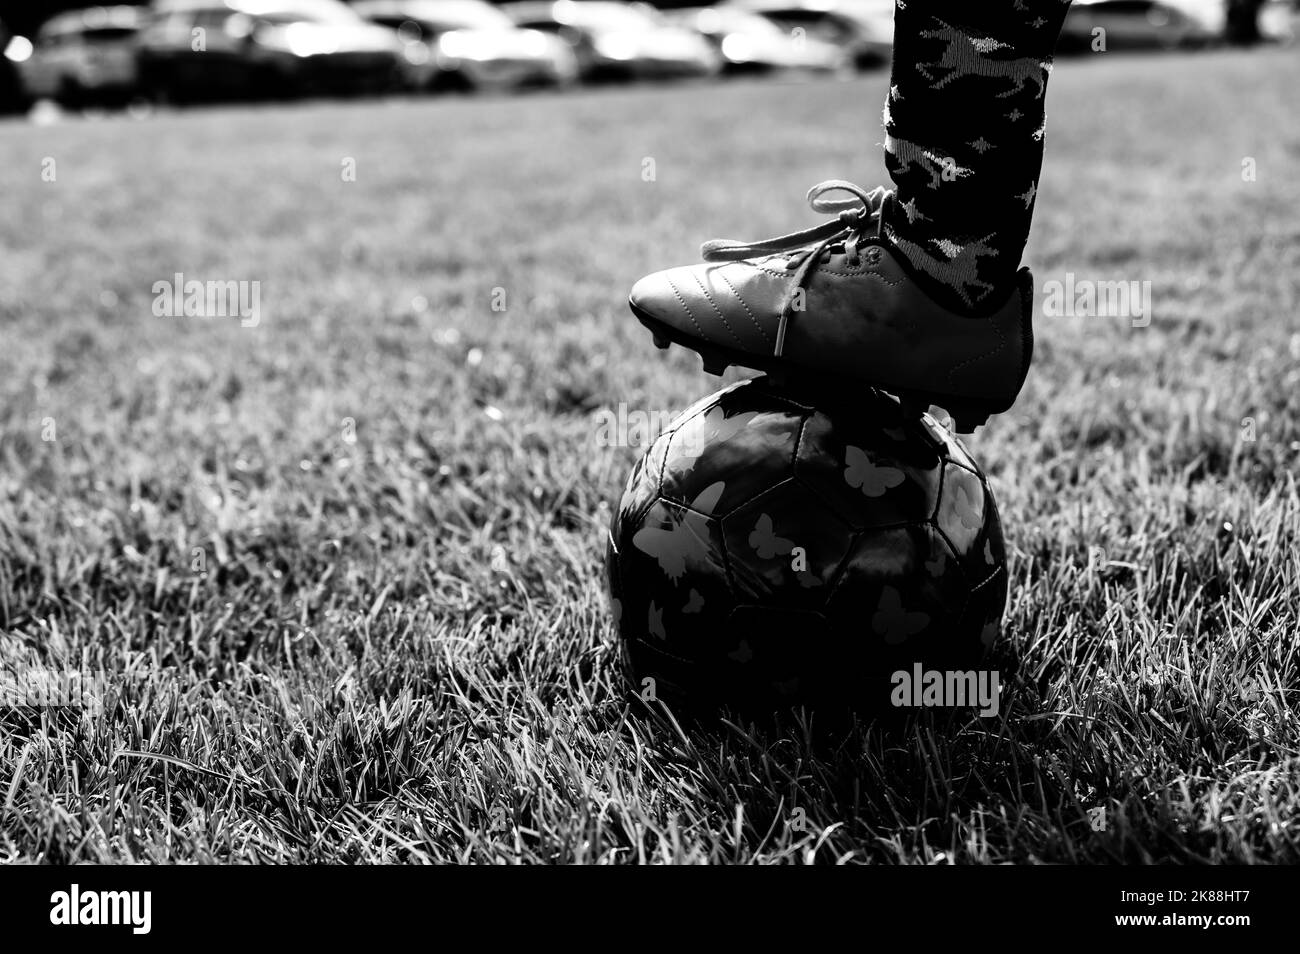 Konzentriere dich selektiv auf den Fußball von Mädchen mit einem Spieler auf dem Rasen. Stockfoto